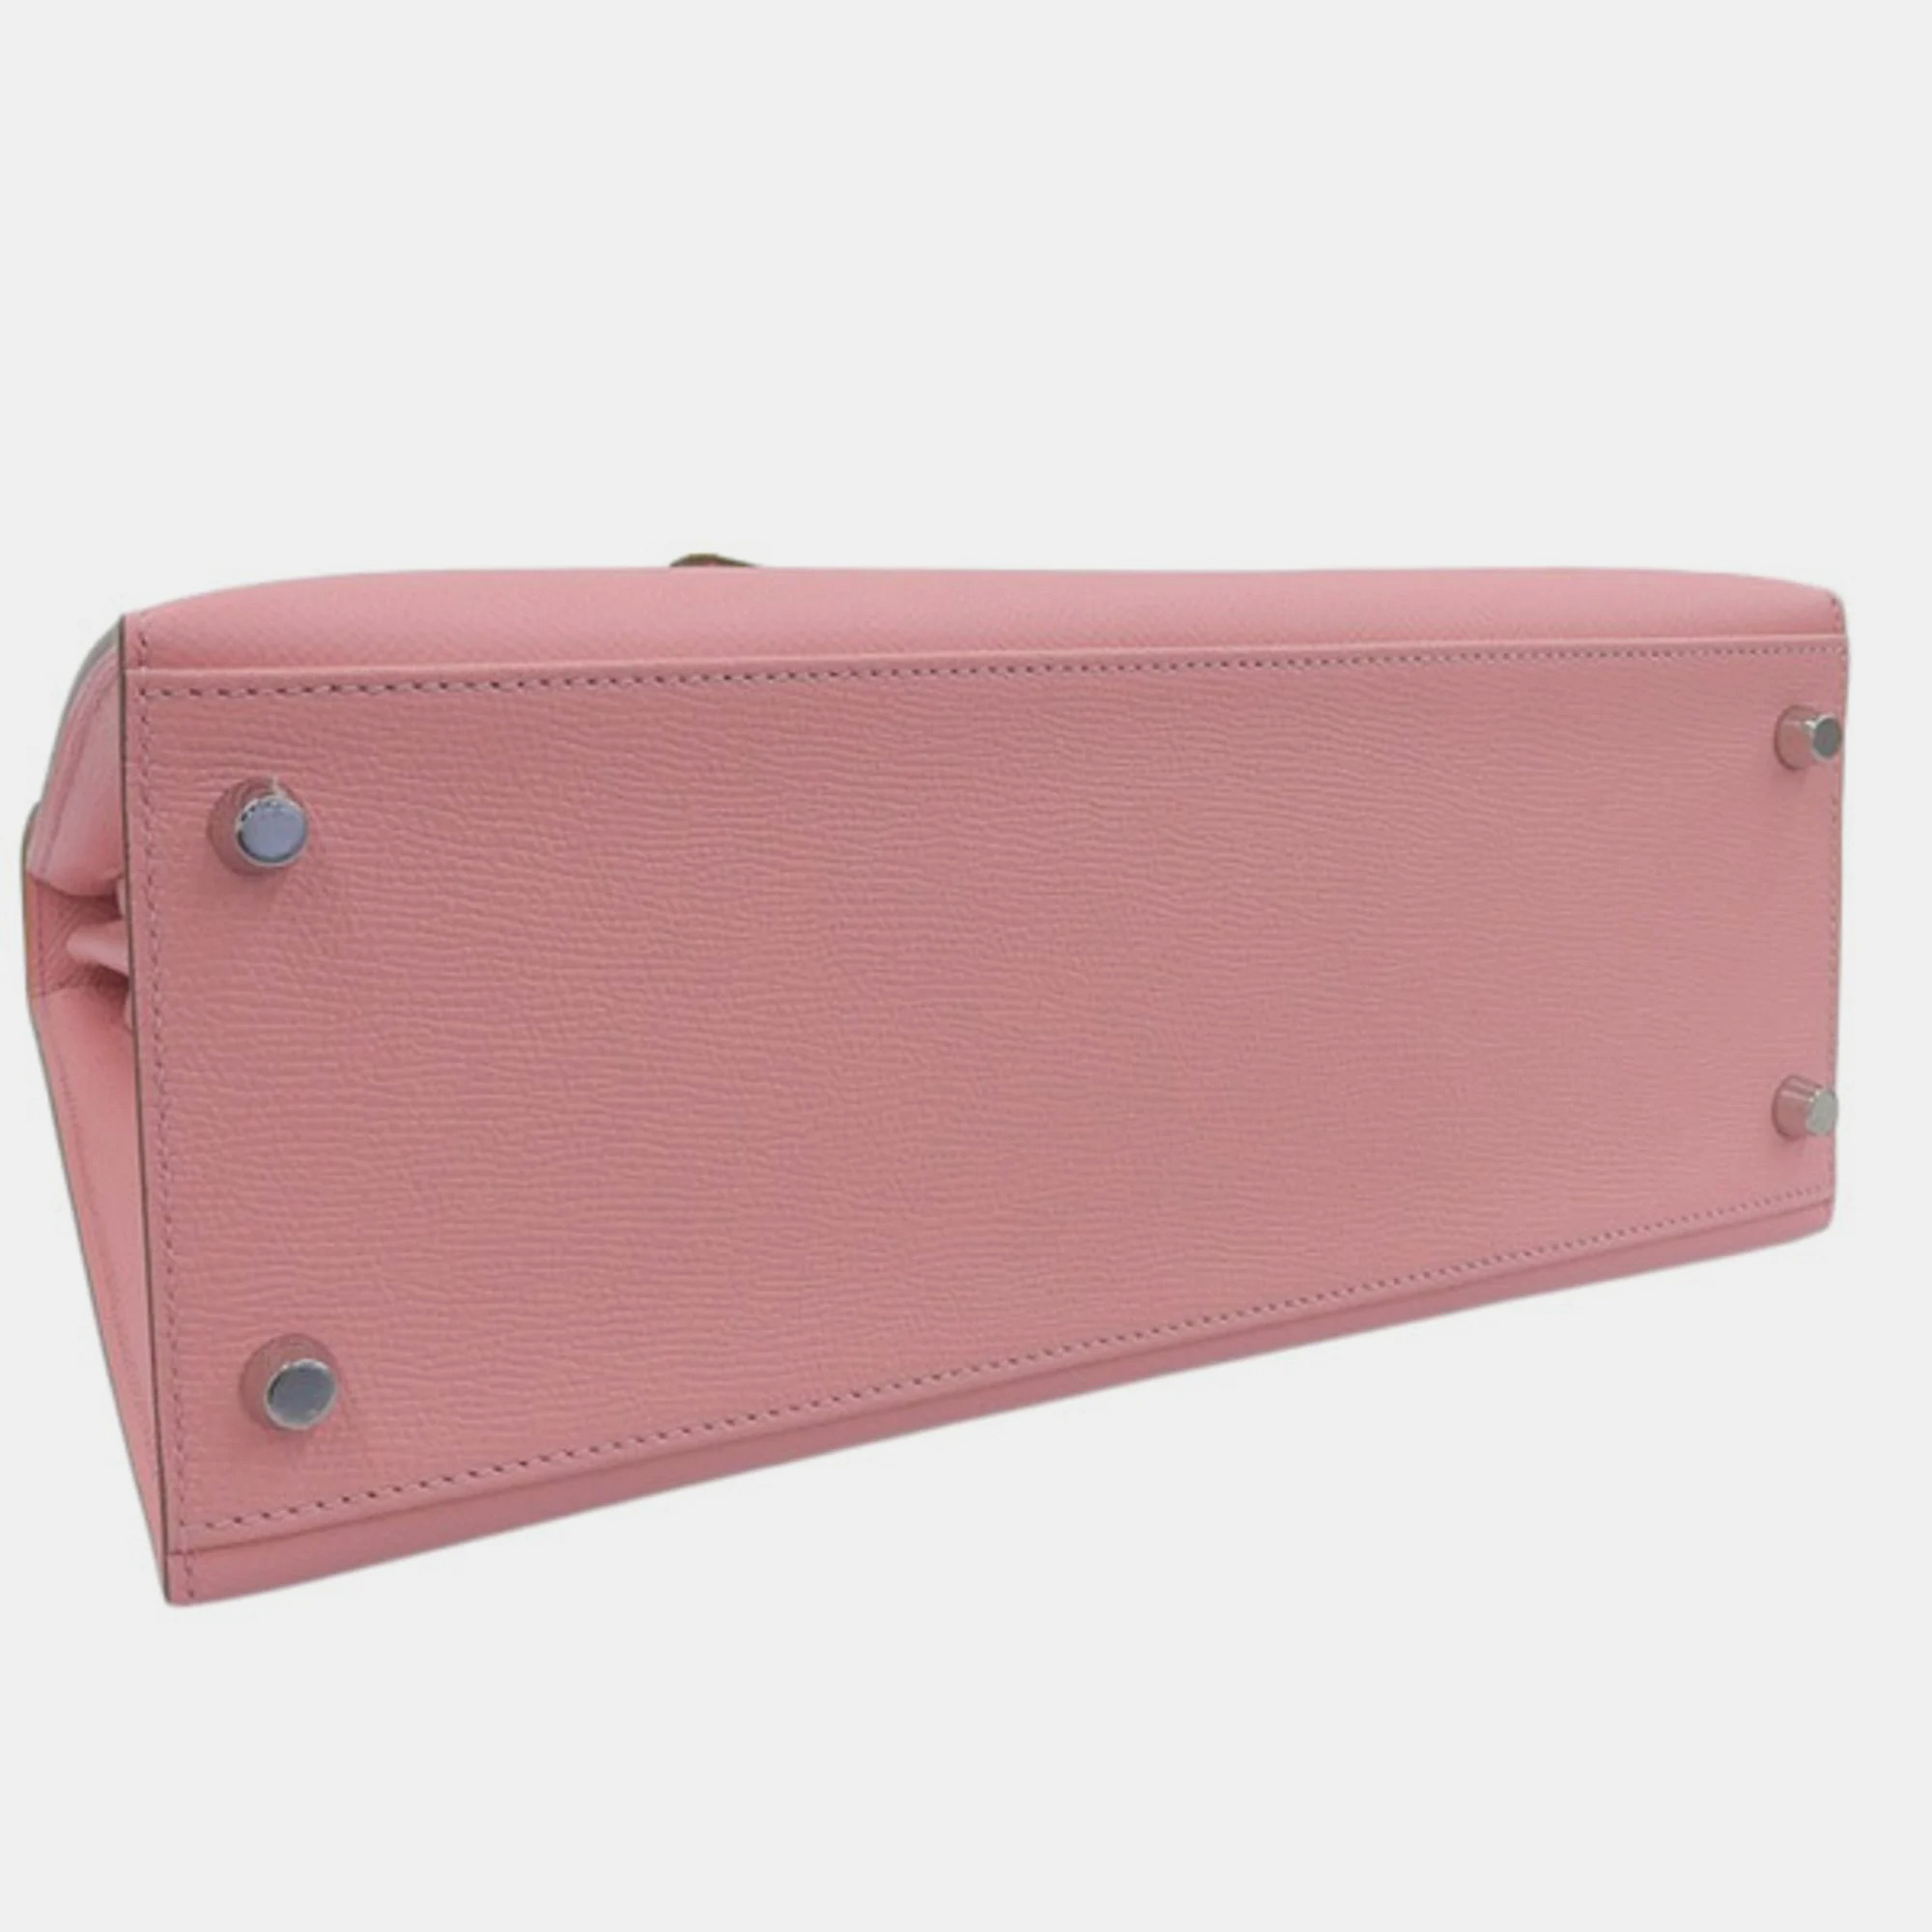 HERMES Vaux Epson Kelly 28 Handbag Pink Ladies